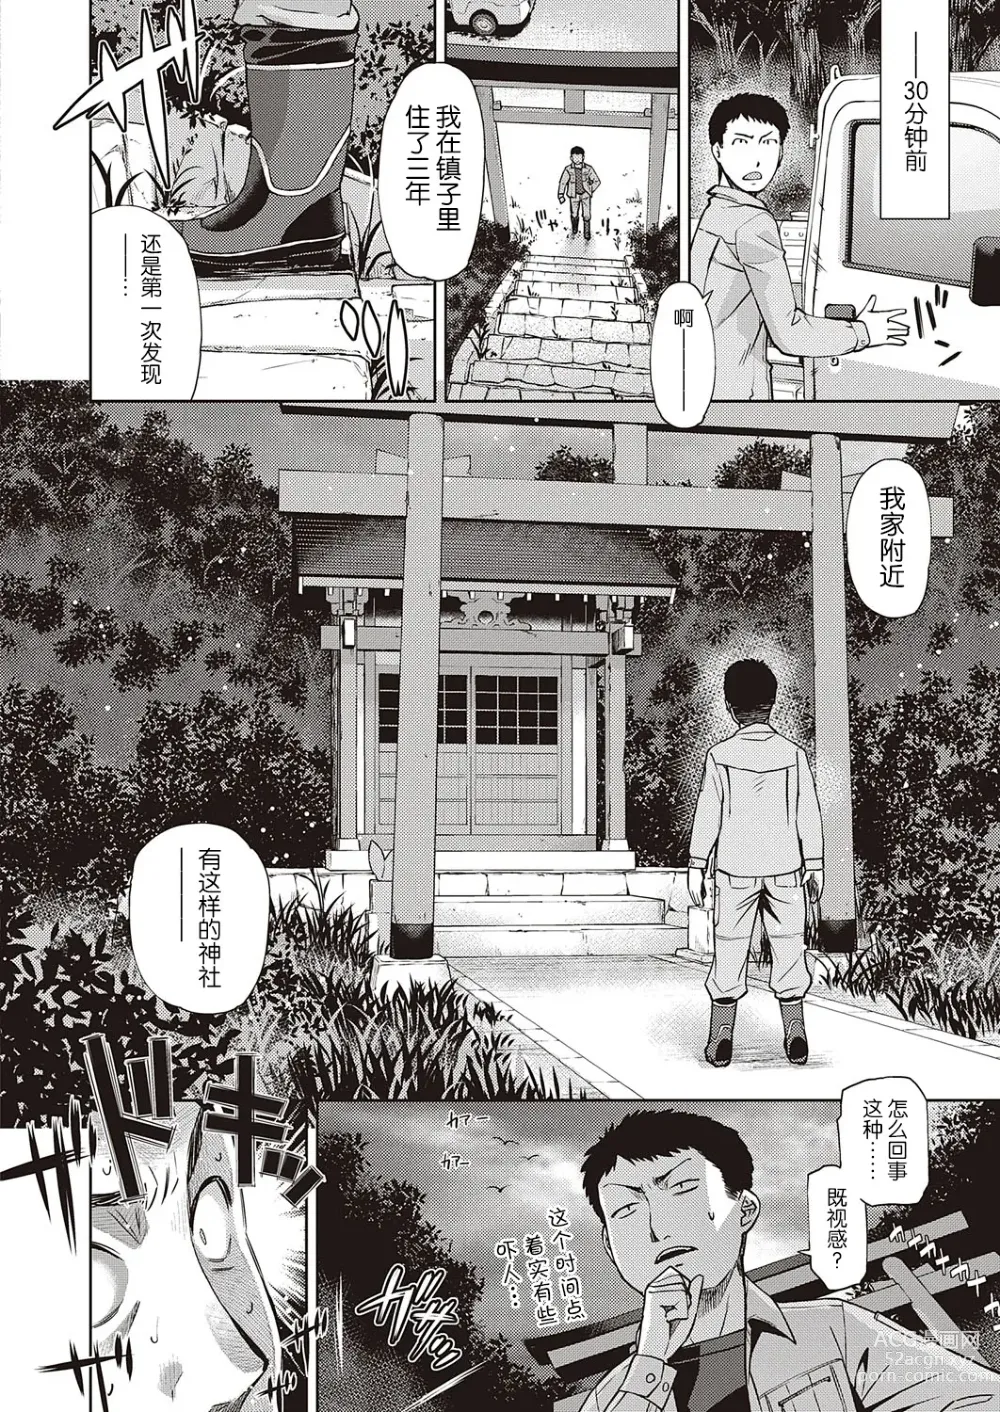 Page 2 of manga Mate ba Megane no Kitsune ari